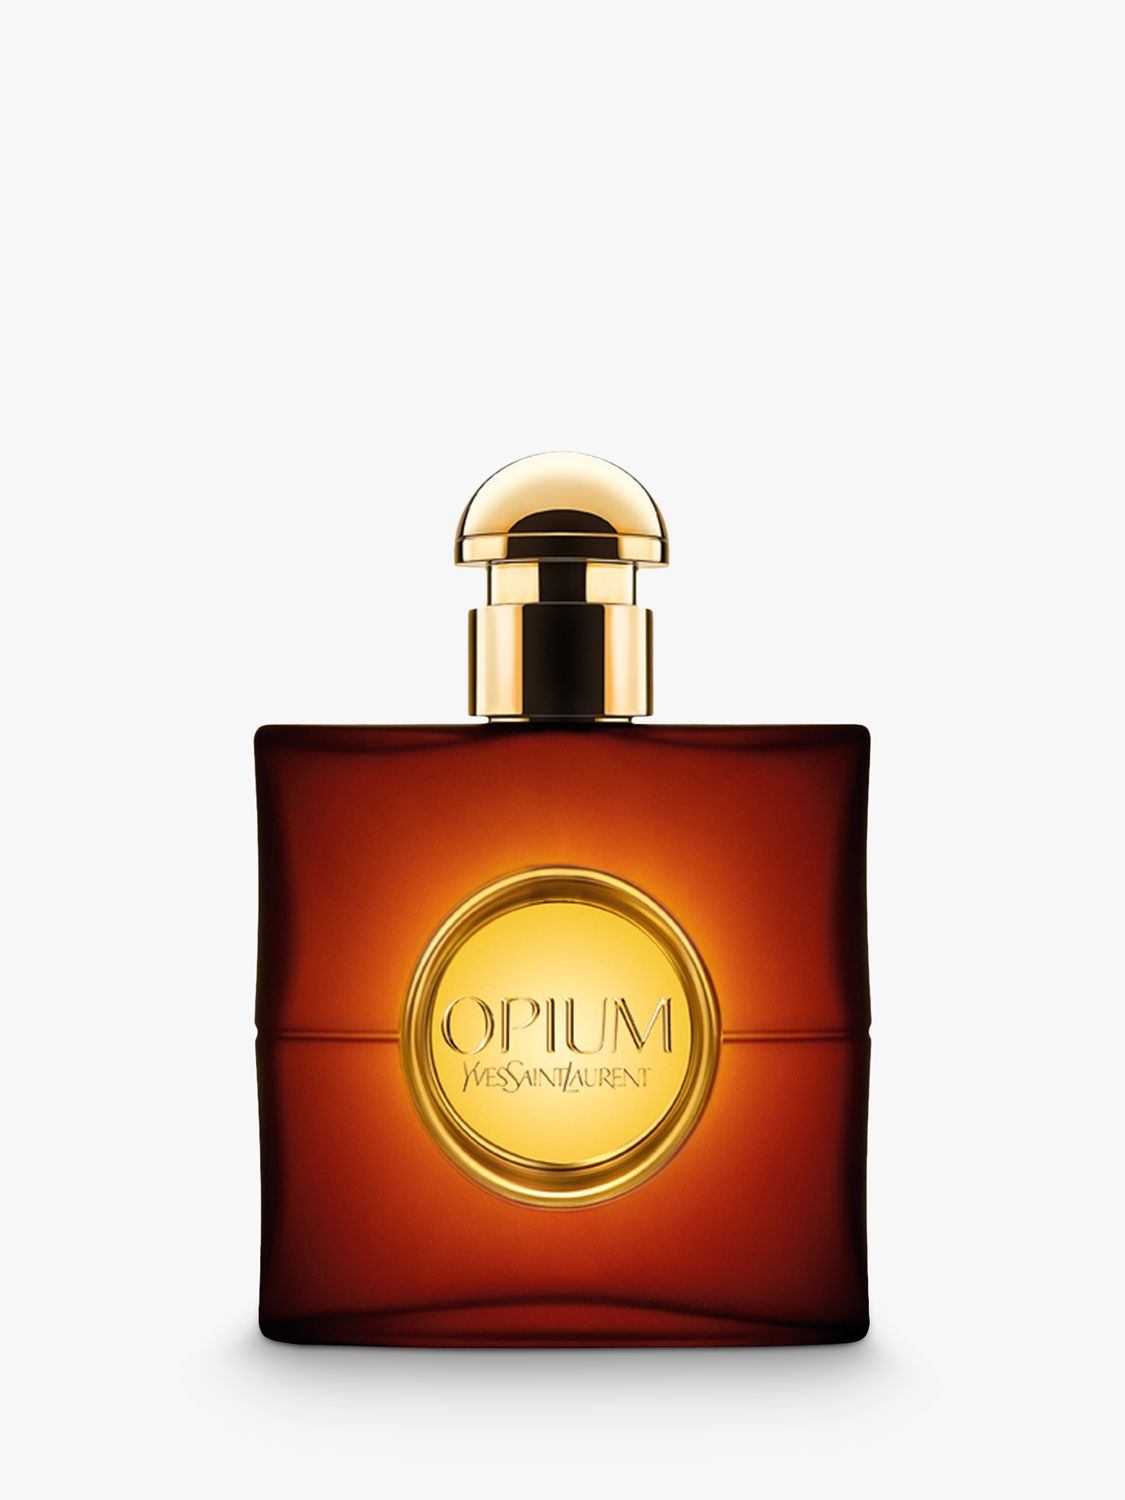 Yves Saint Laurent Opium Eau de Toilette, 30ml